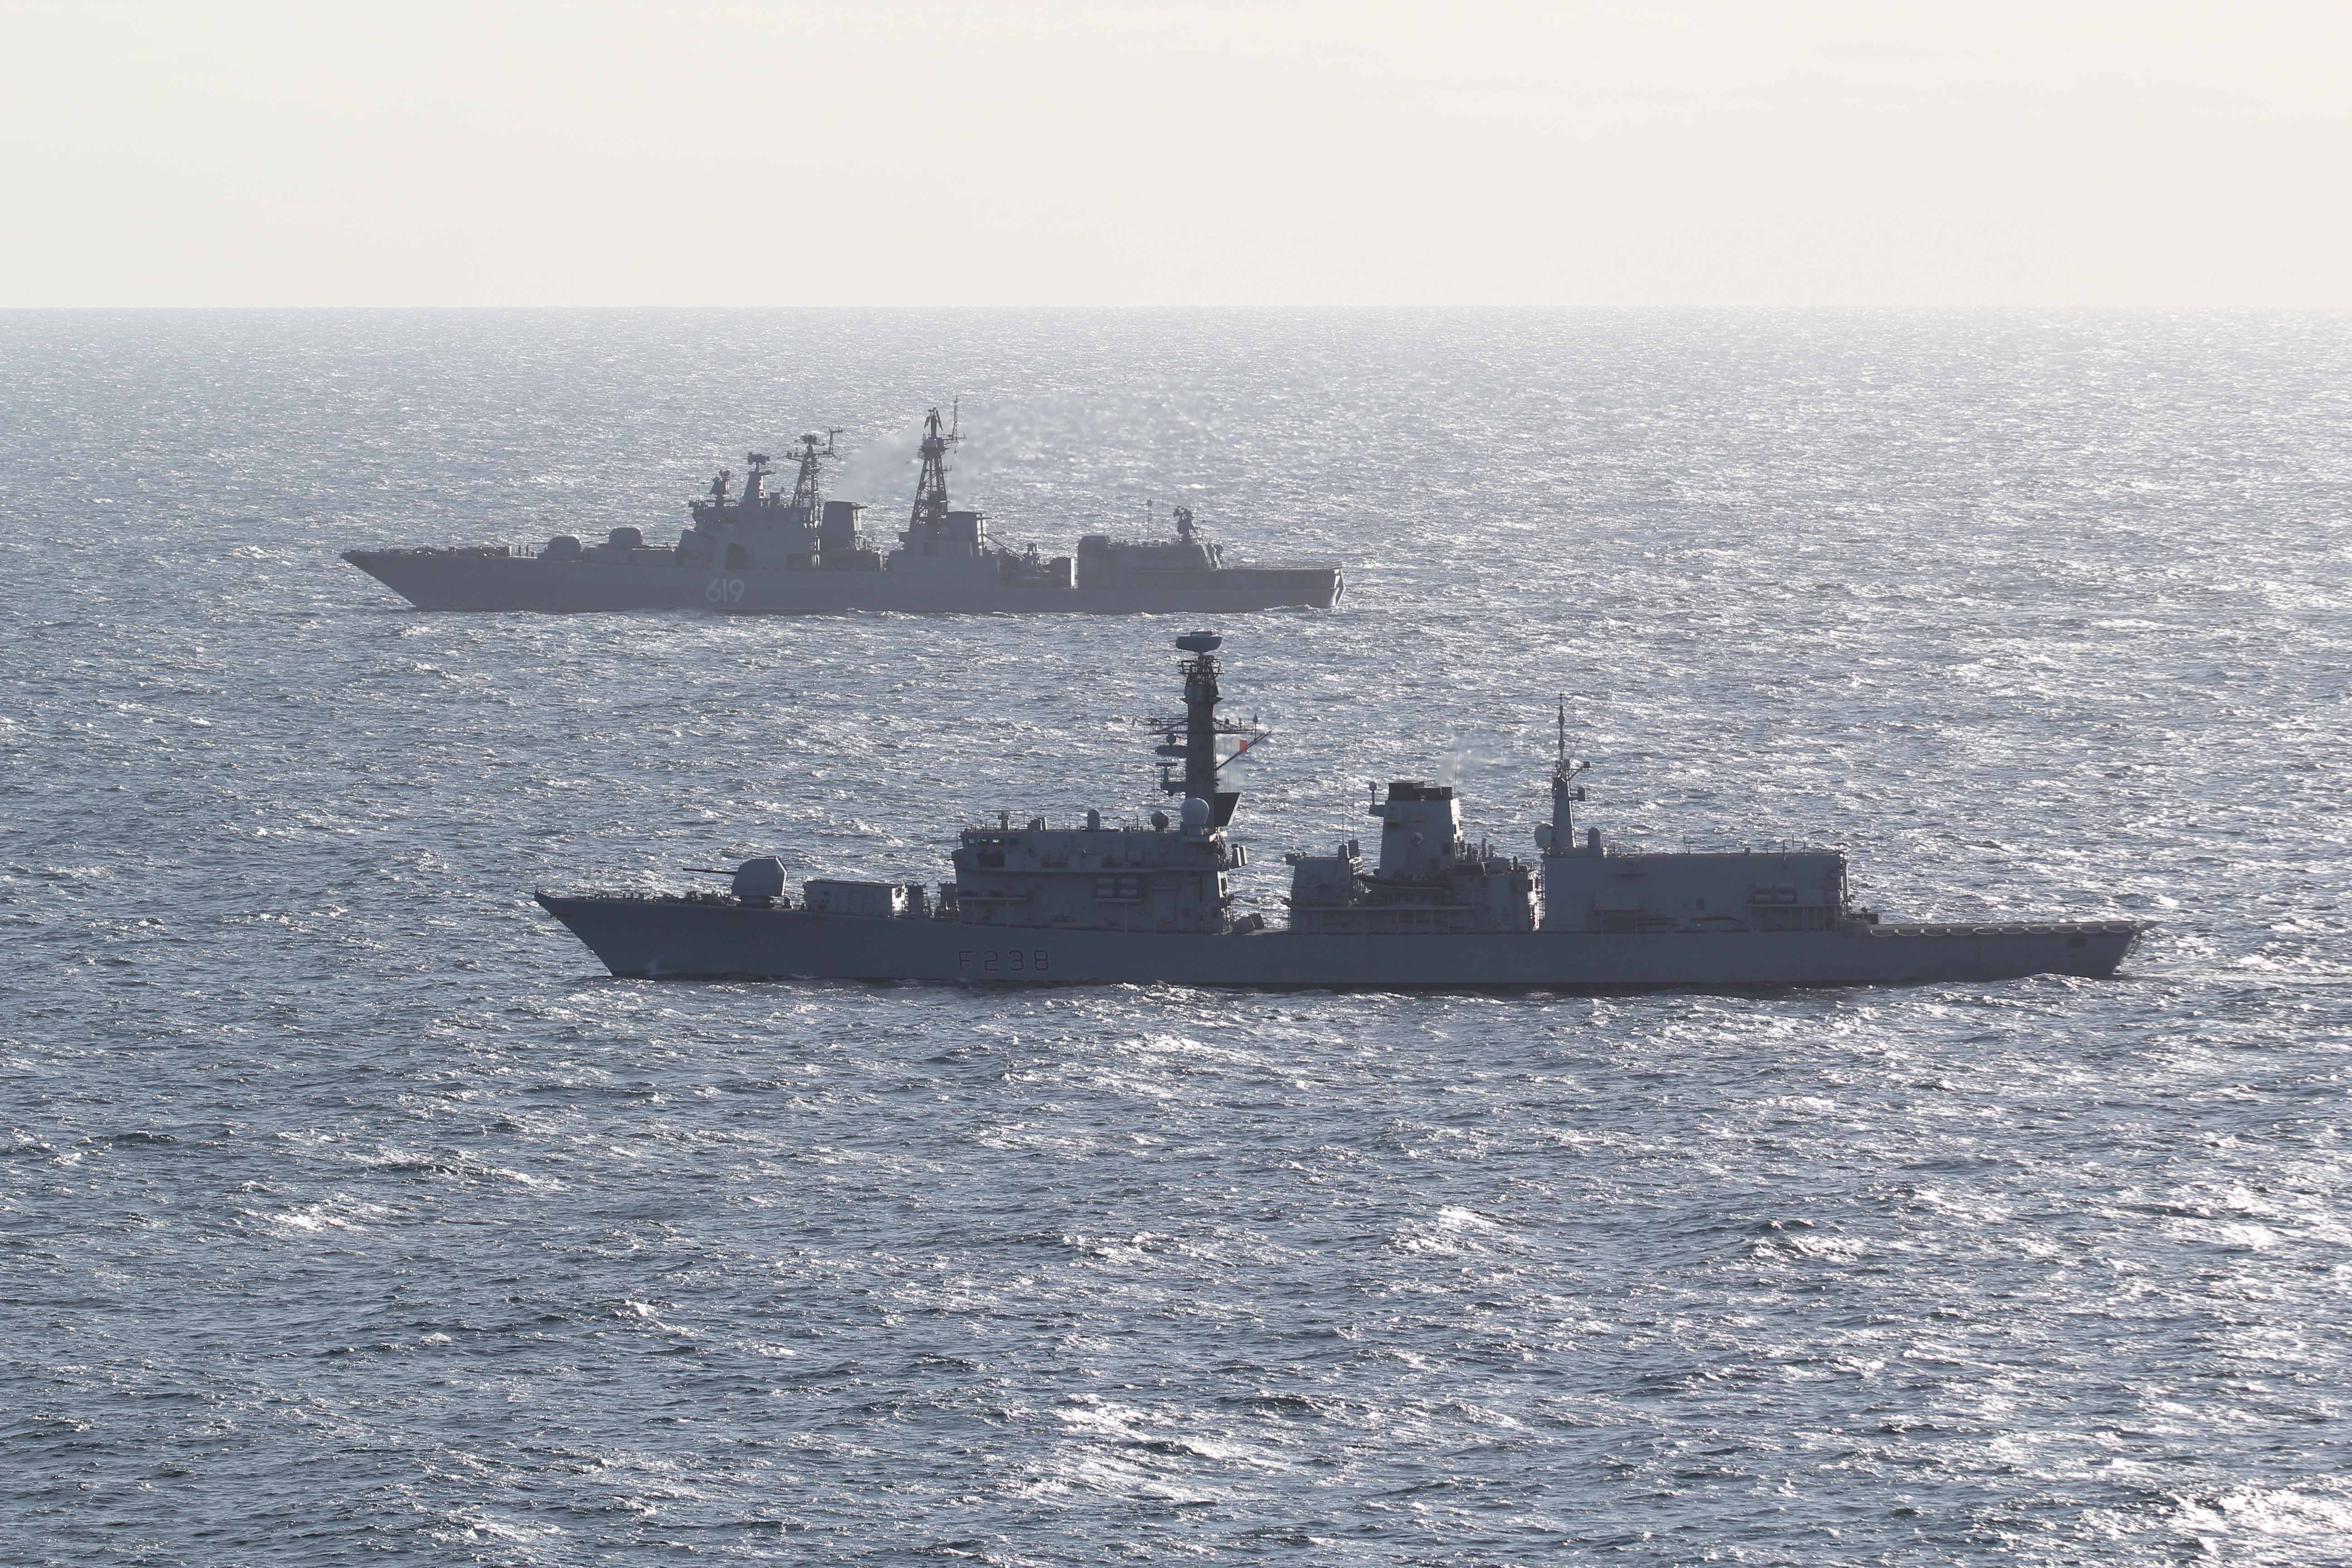 Британский фрегат типа 23 HMS Northumberland  сопровождает  эсминец Severmorsk, типа  Udaloy, при его проходе через пролив Ла-Манш, фото сделано 15 мая 2019 года